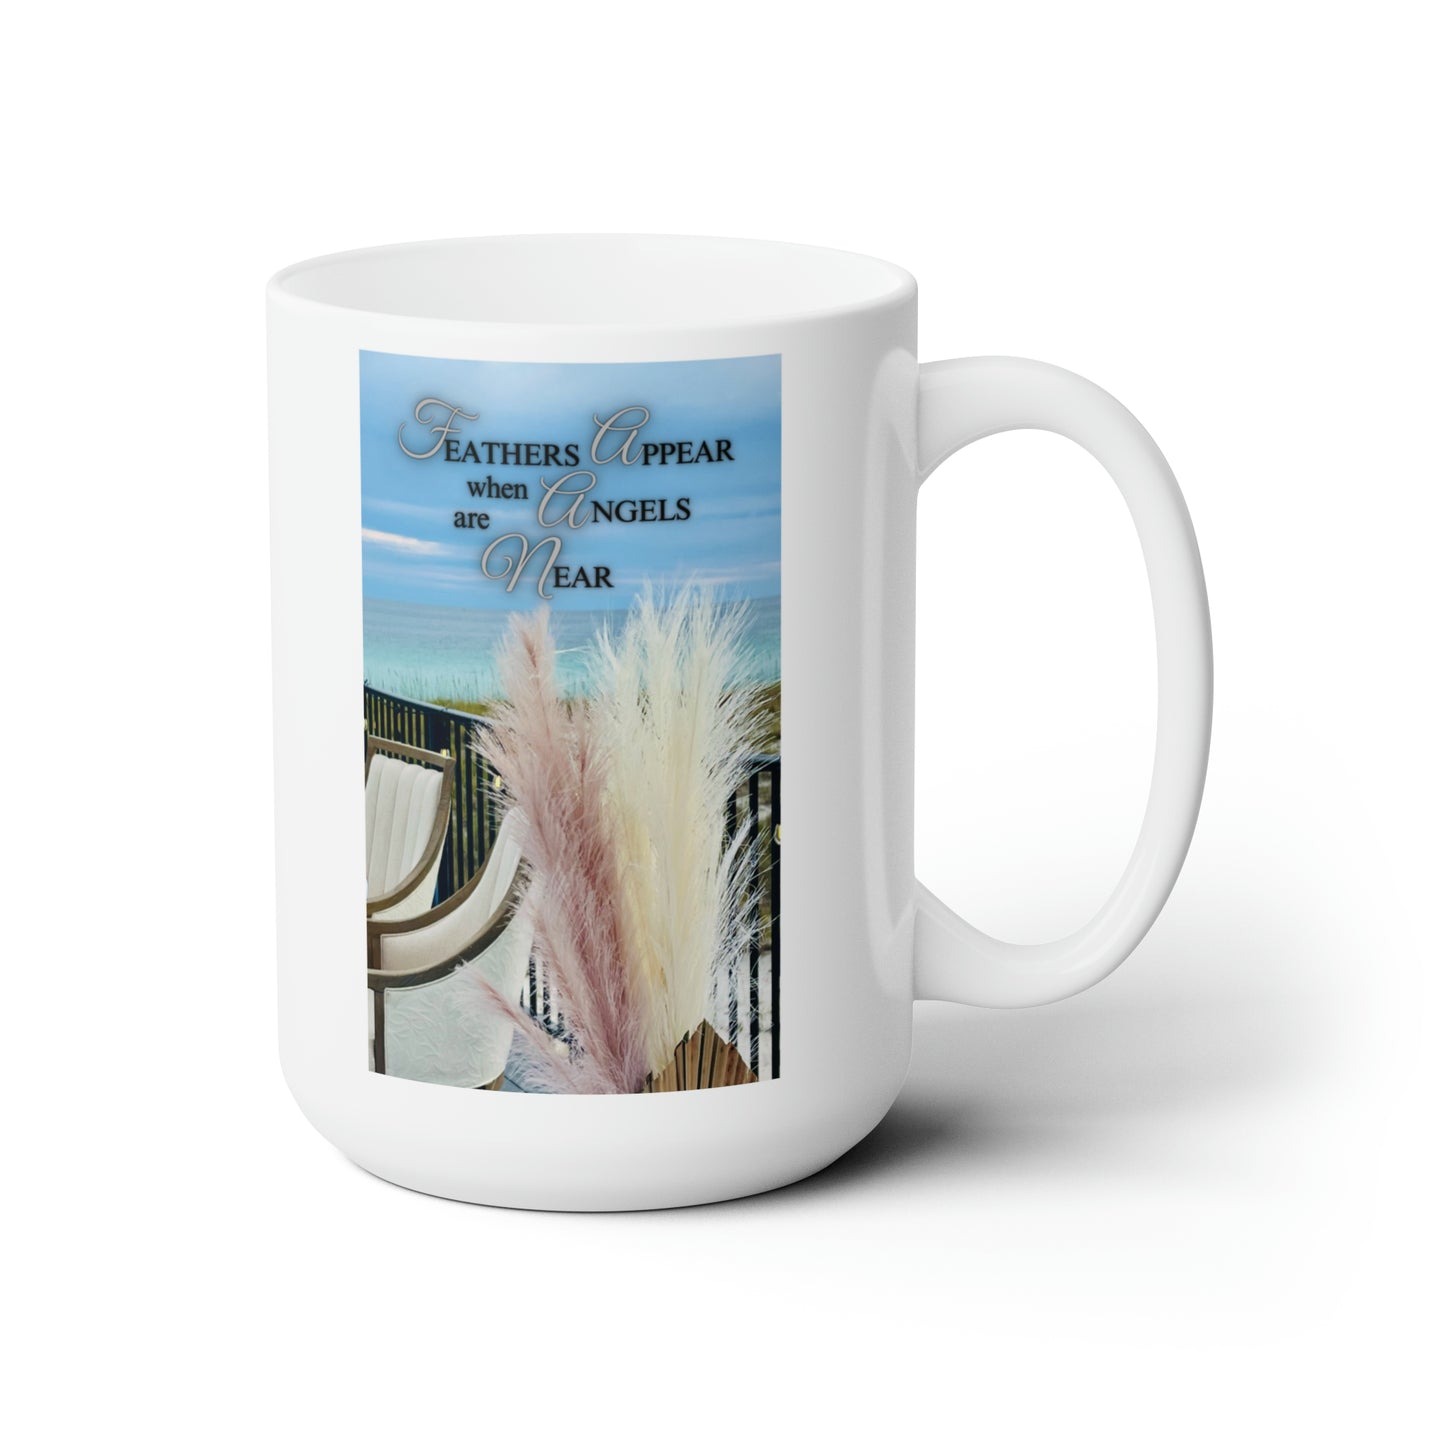 A Souther Sass Original design - "Angels Appear" - Ceramic Coffee Mug 15oz